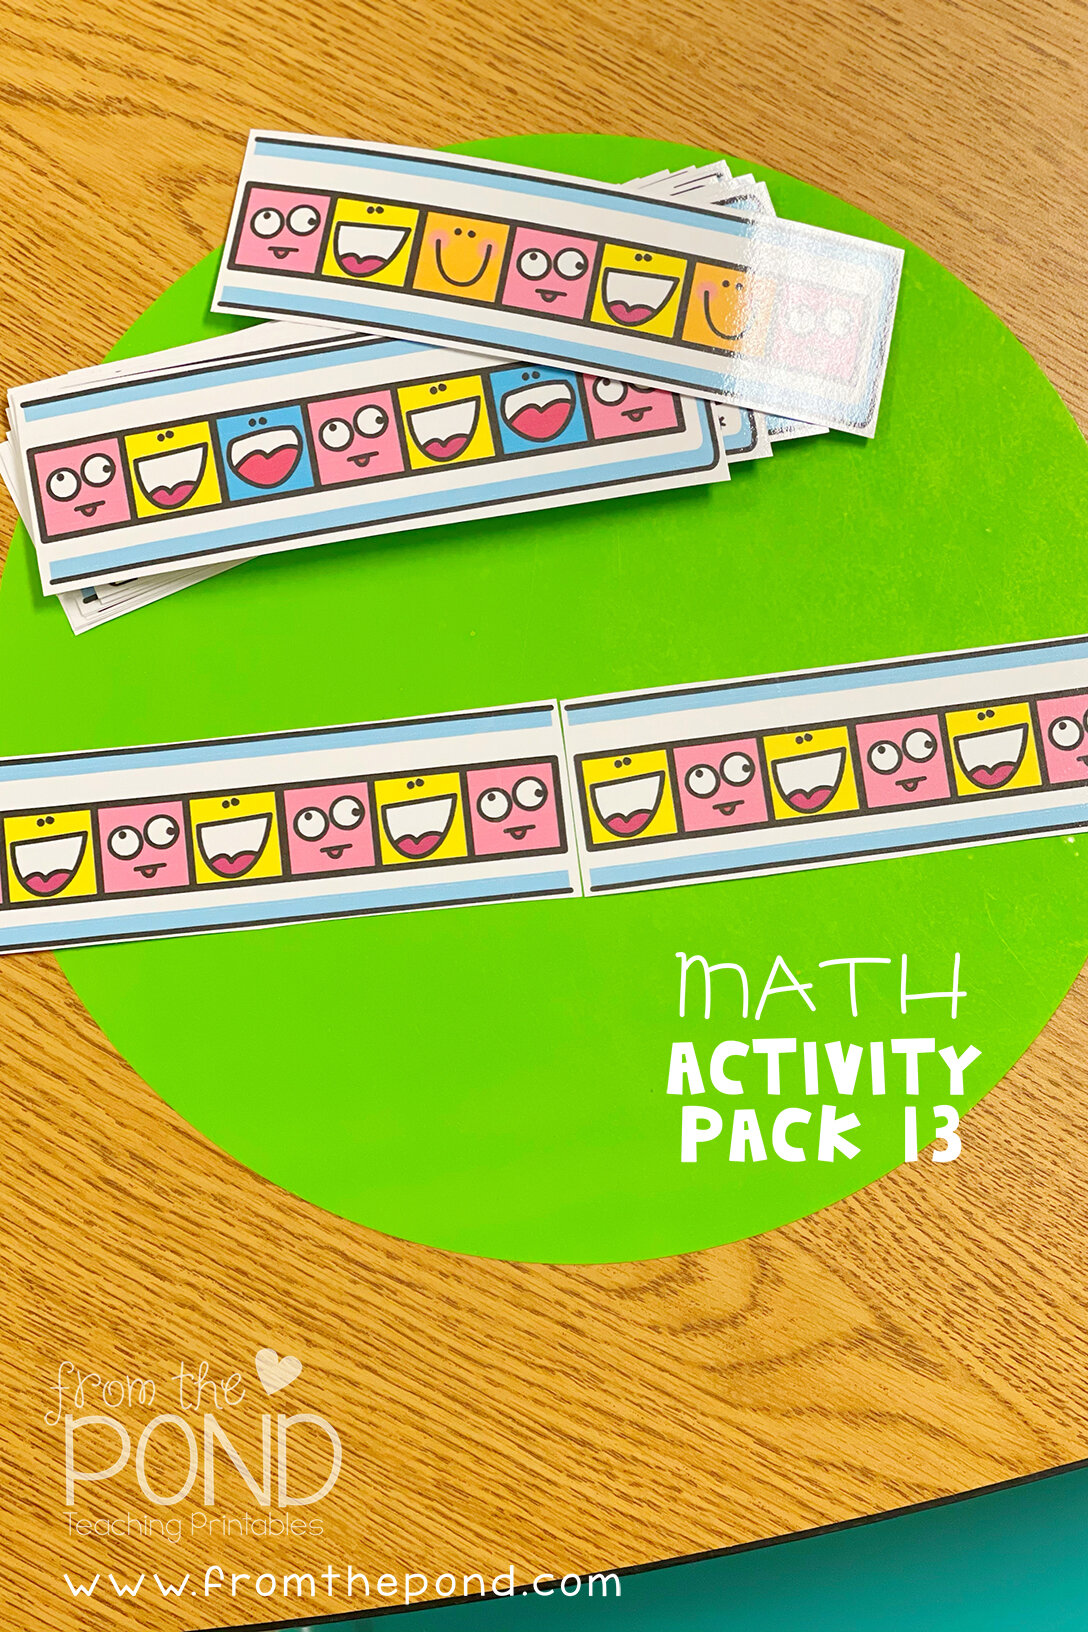 math pack 13 06.jpg